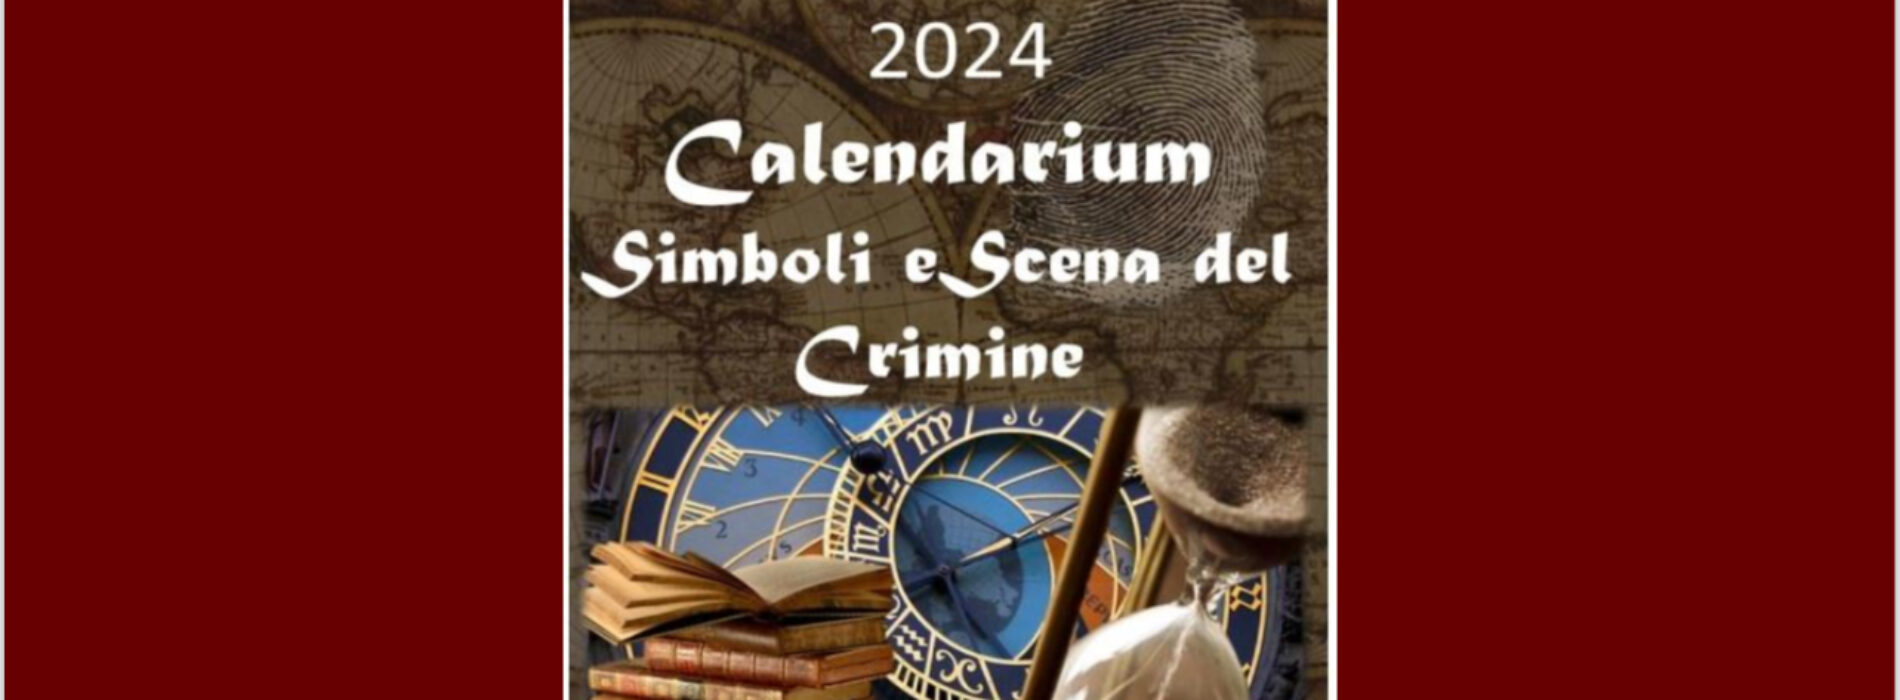 Simboli e scene del crimine, master all’Università Vanvitelli